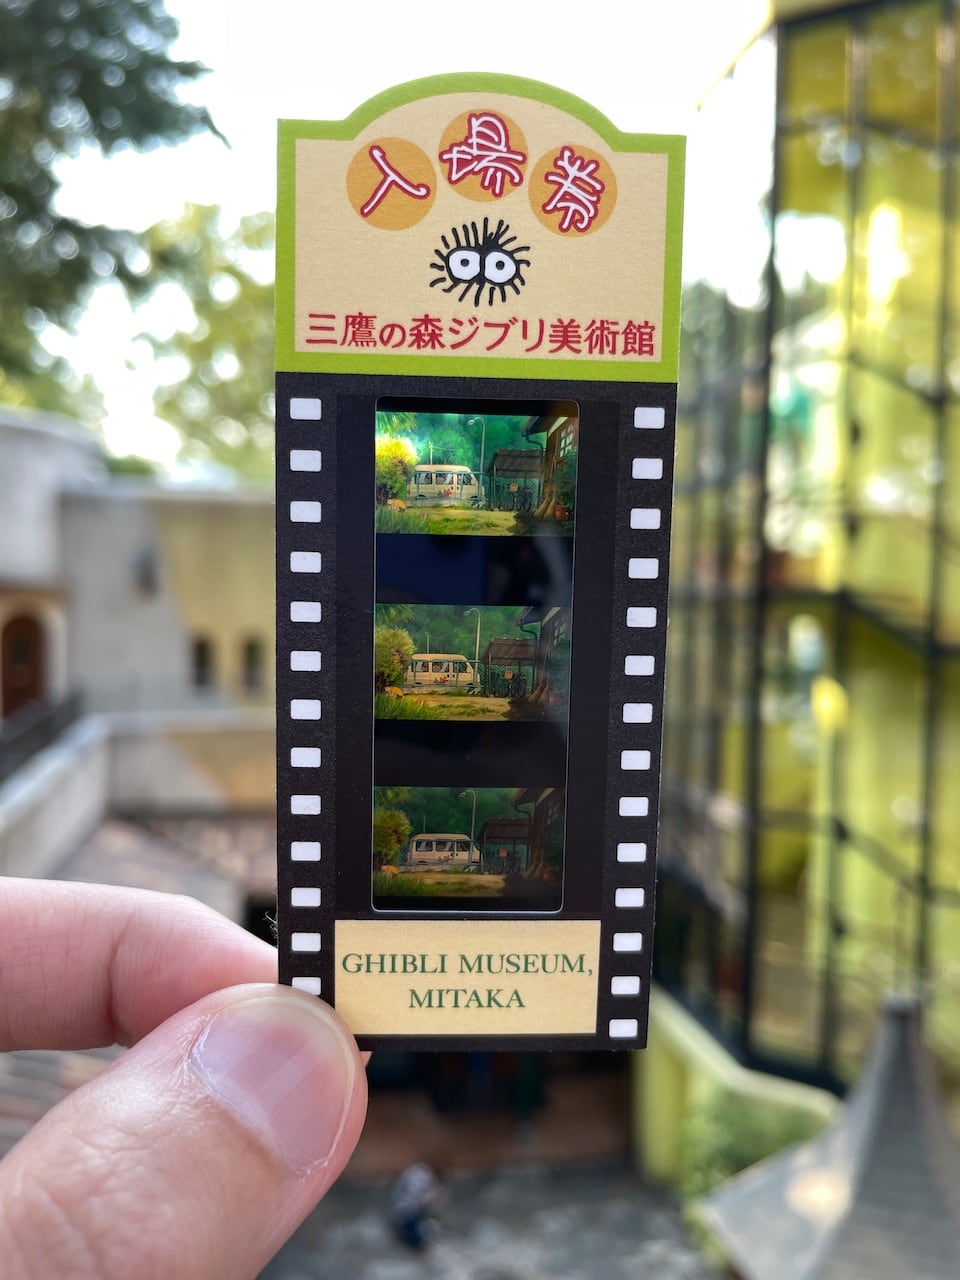 My Ghibli museum ticket